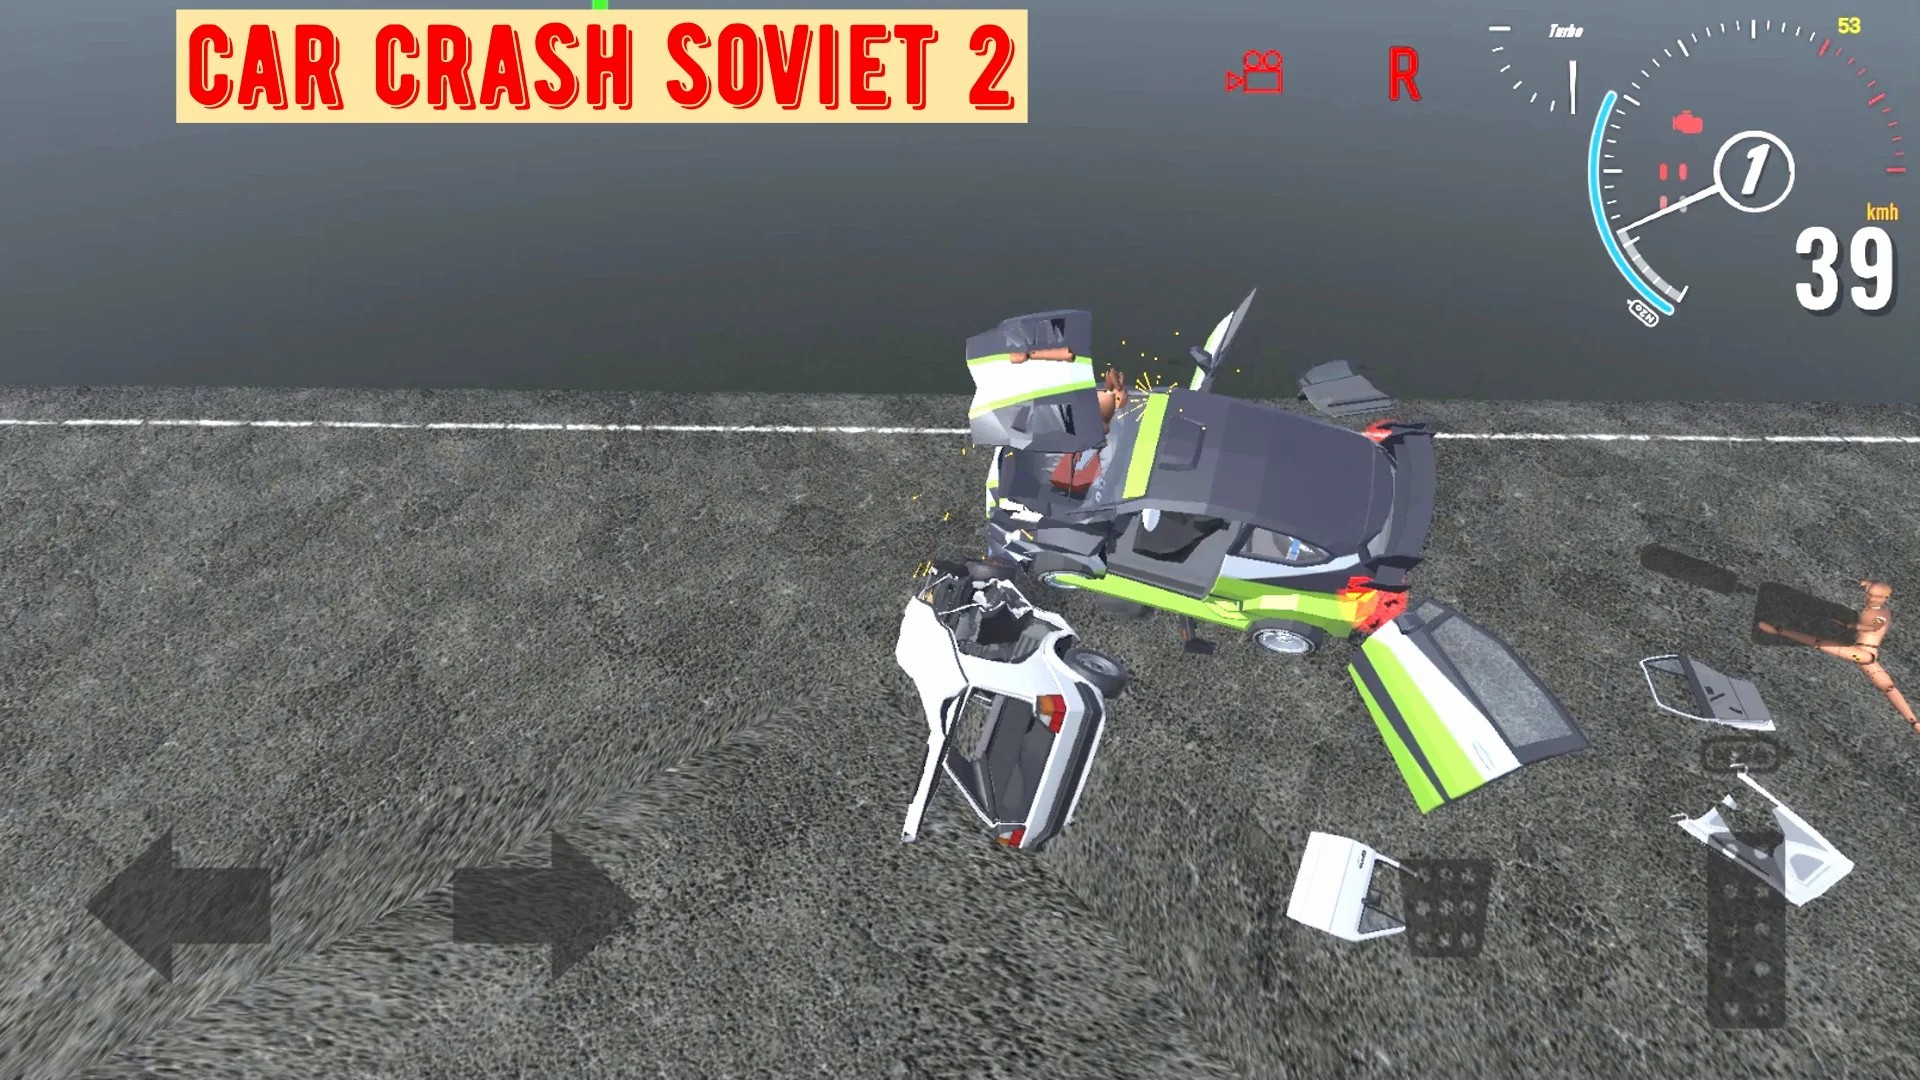 苏联汽车碰撞2